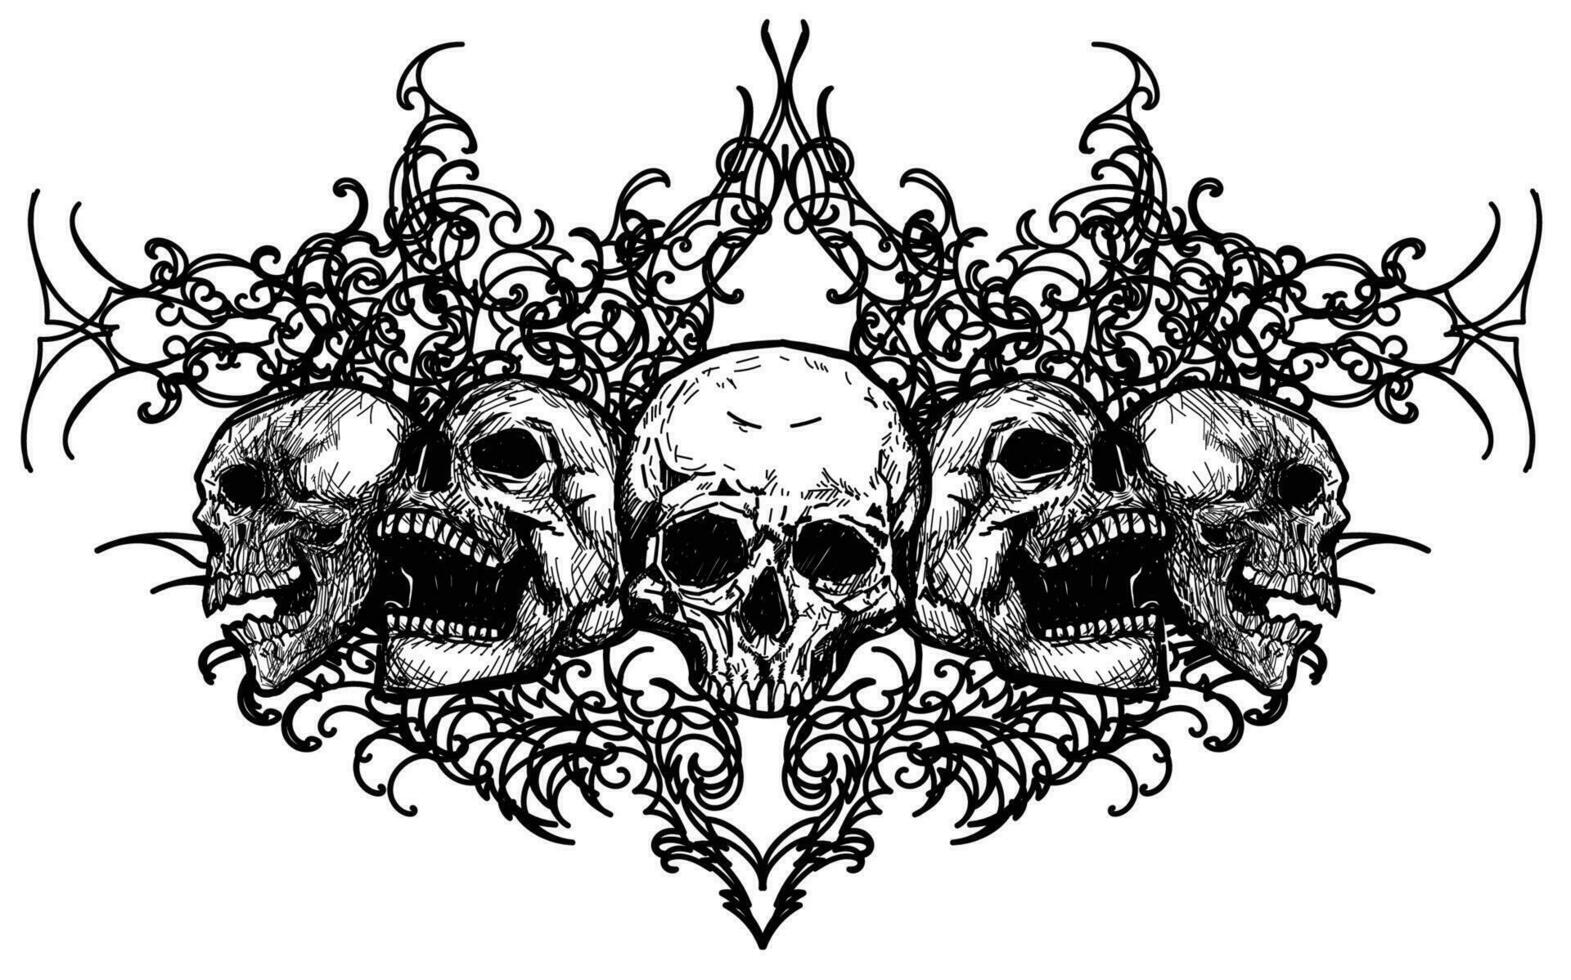 tatouage art crâne croquis noir et blanc vecteur